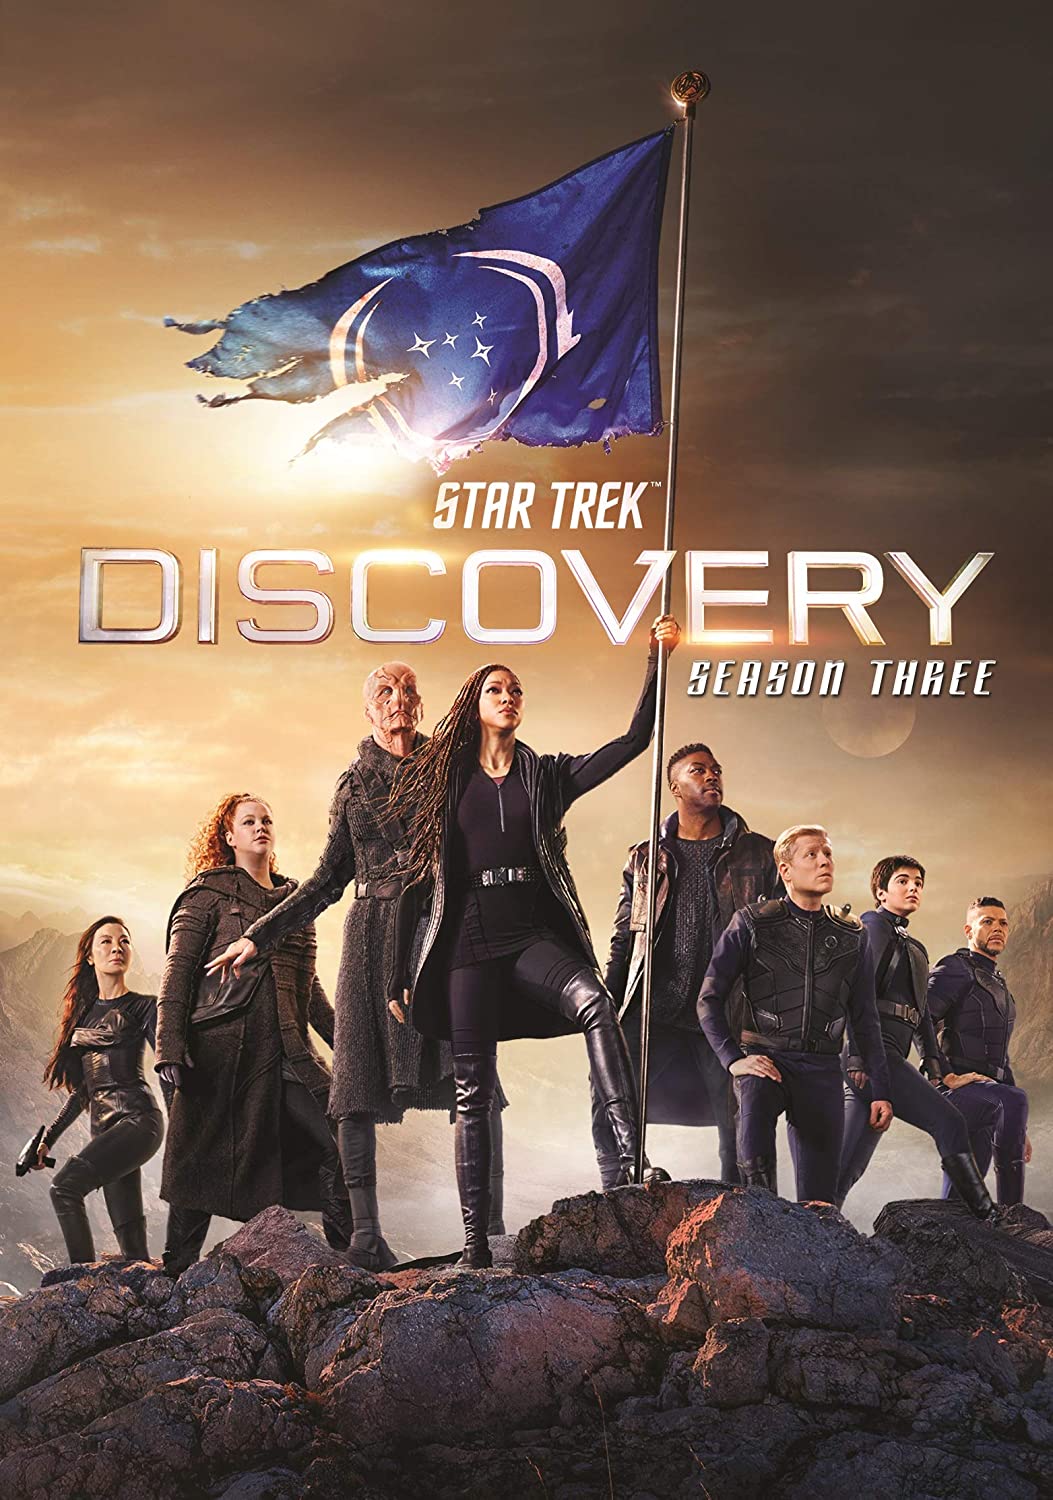 ดูหนังออนไลน์ฟรี Star Trek Discovery Season 3 EP7 สตาร์ เทรค ดิสคัฟเวอรี่ ซีซั่นที่ 3 ตอนที่ 7